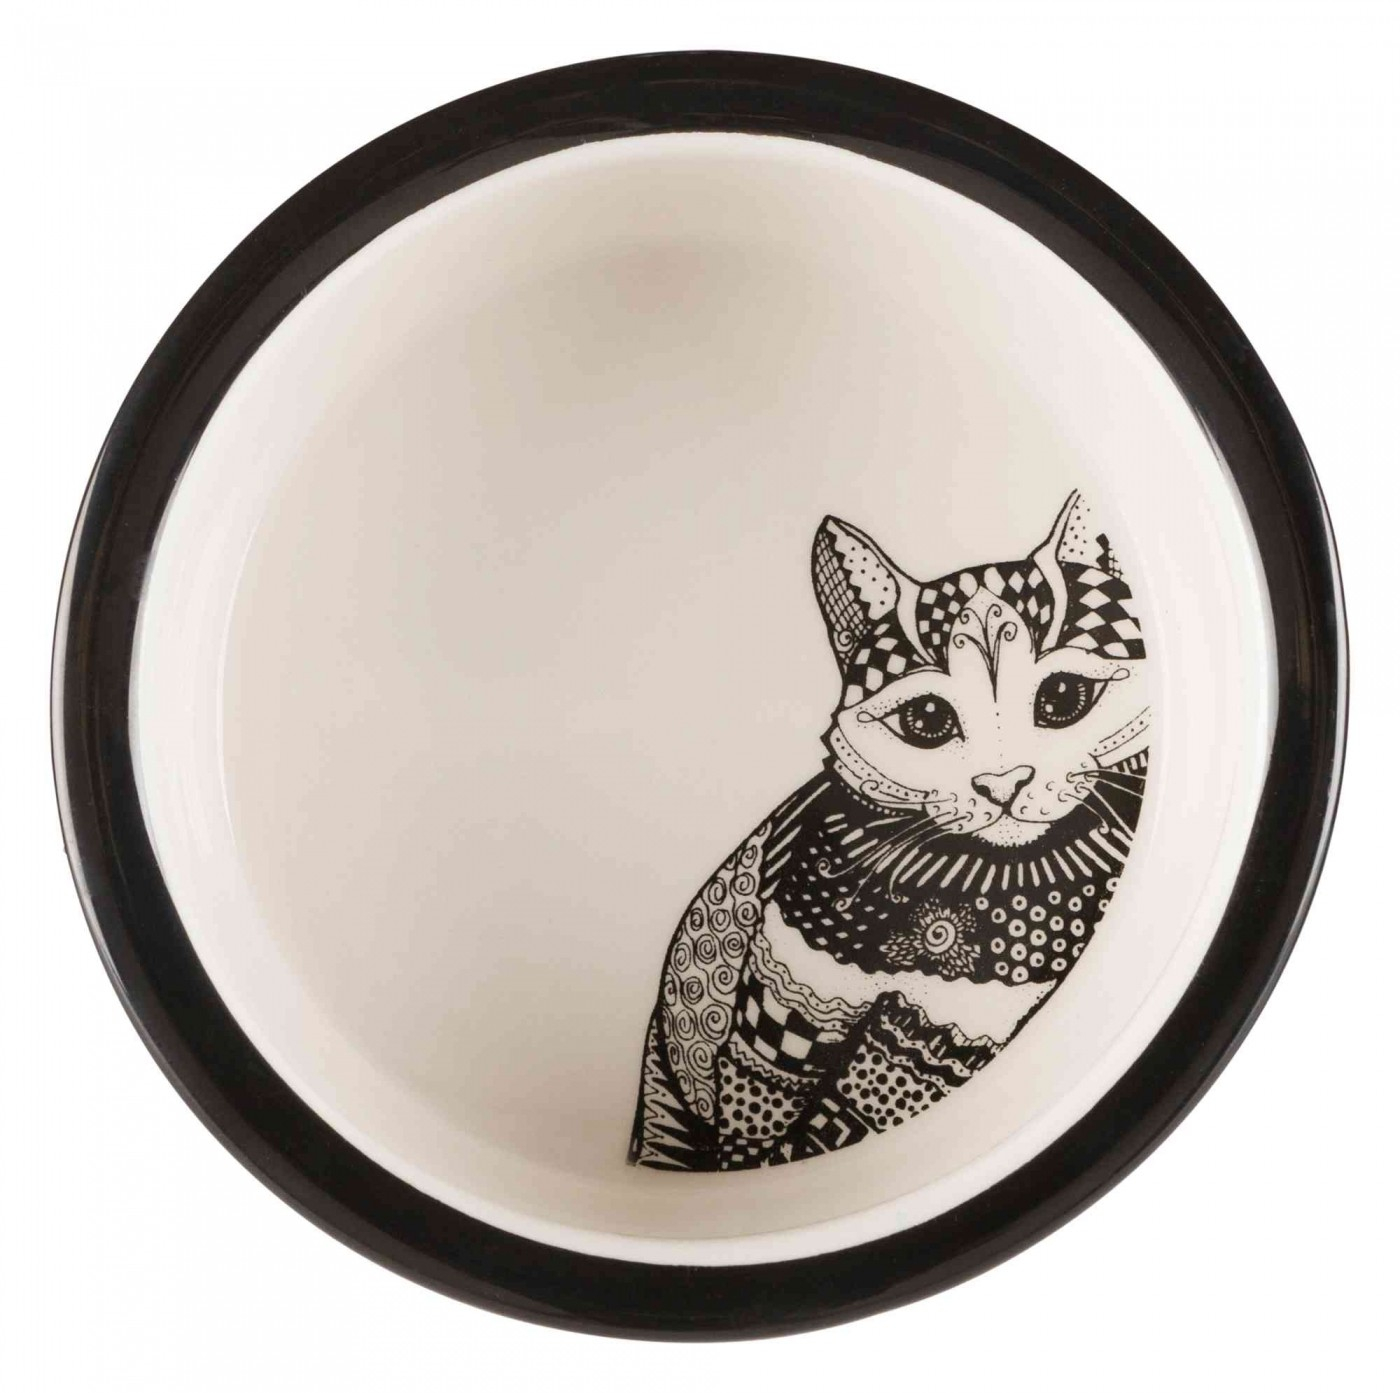 Comedero de cerámica para gato Zentangle